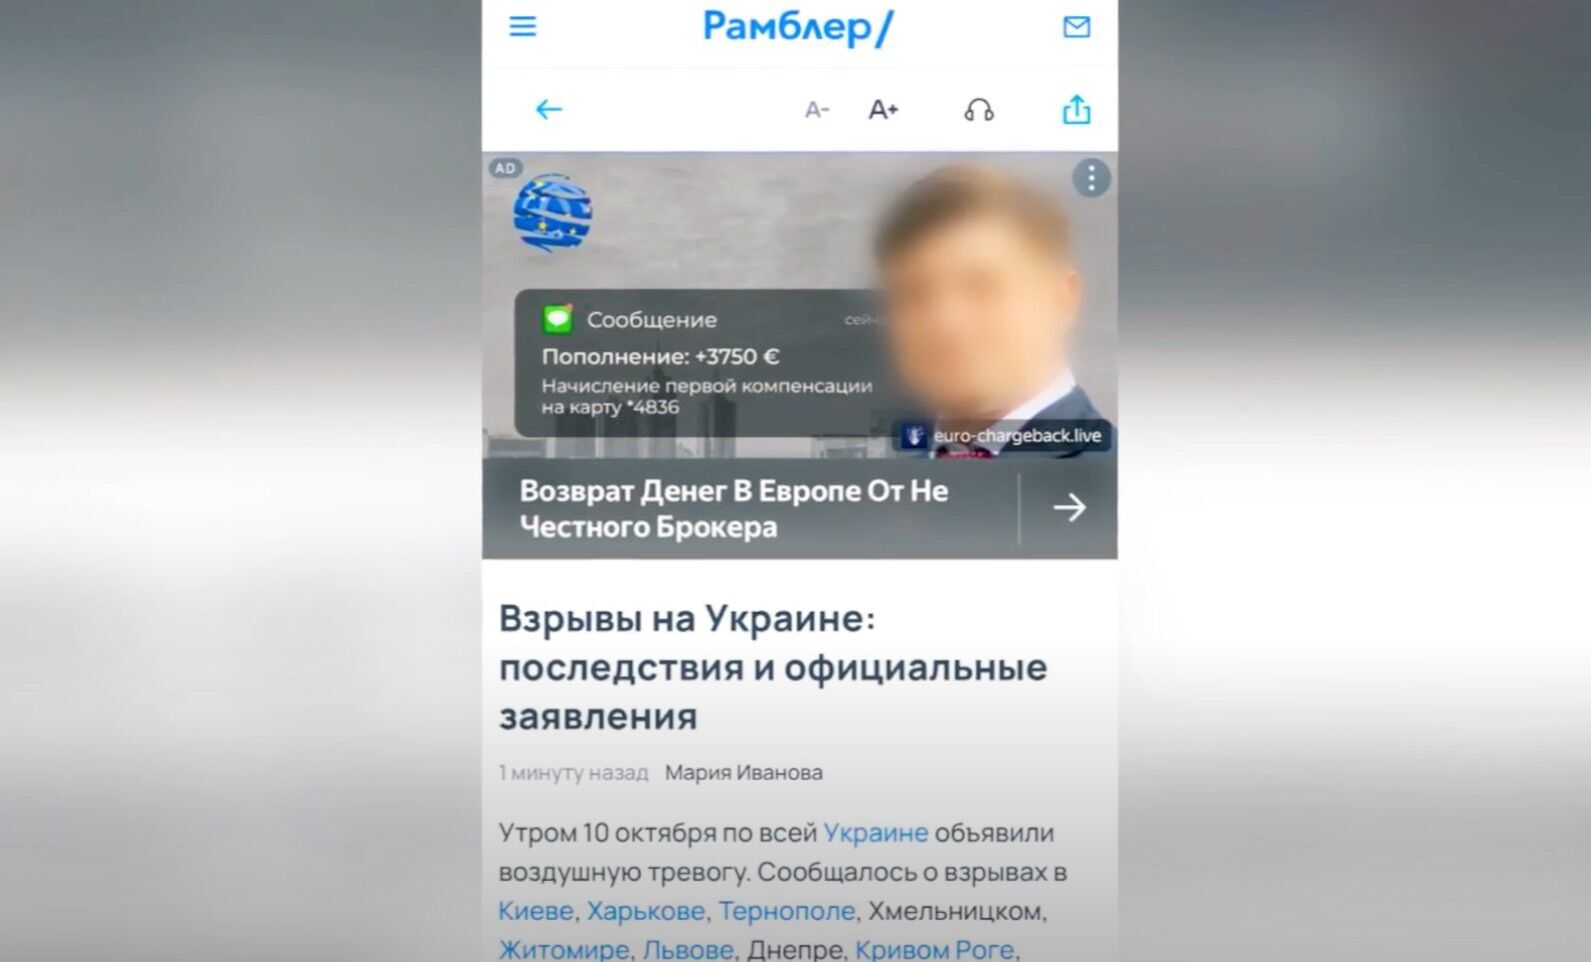 Аферисты использовали лицо известного адвоката для рекламы на российском ресурсе